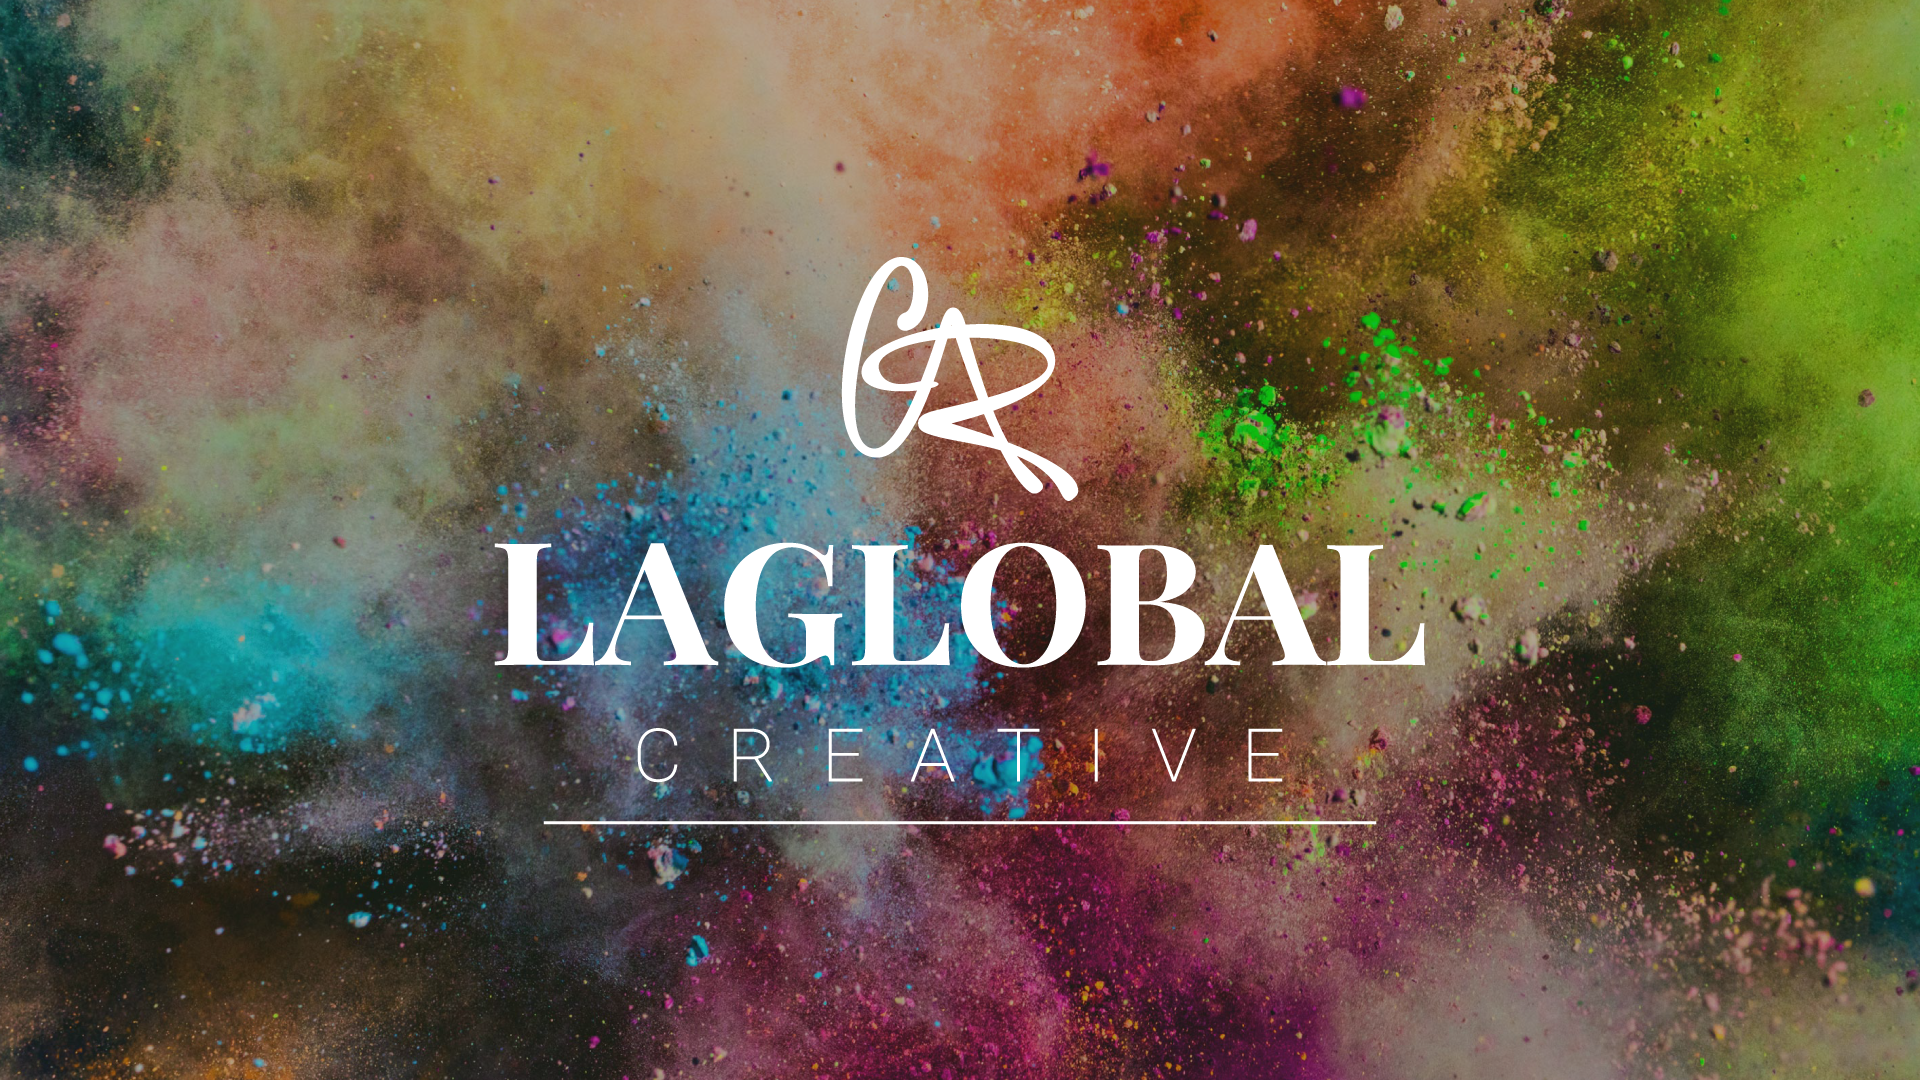 La Global Creative